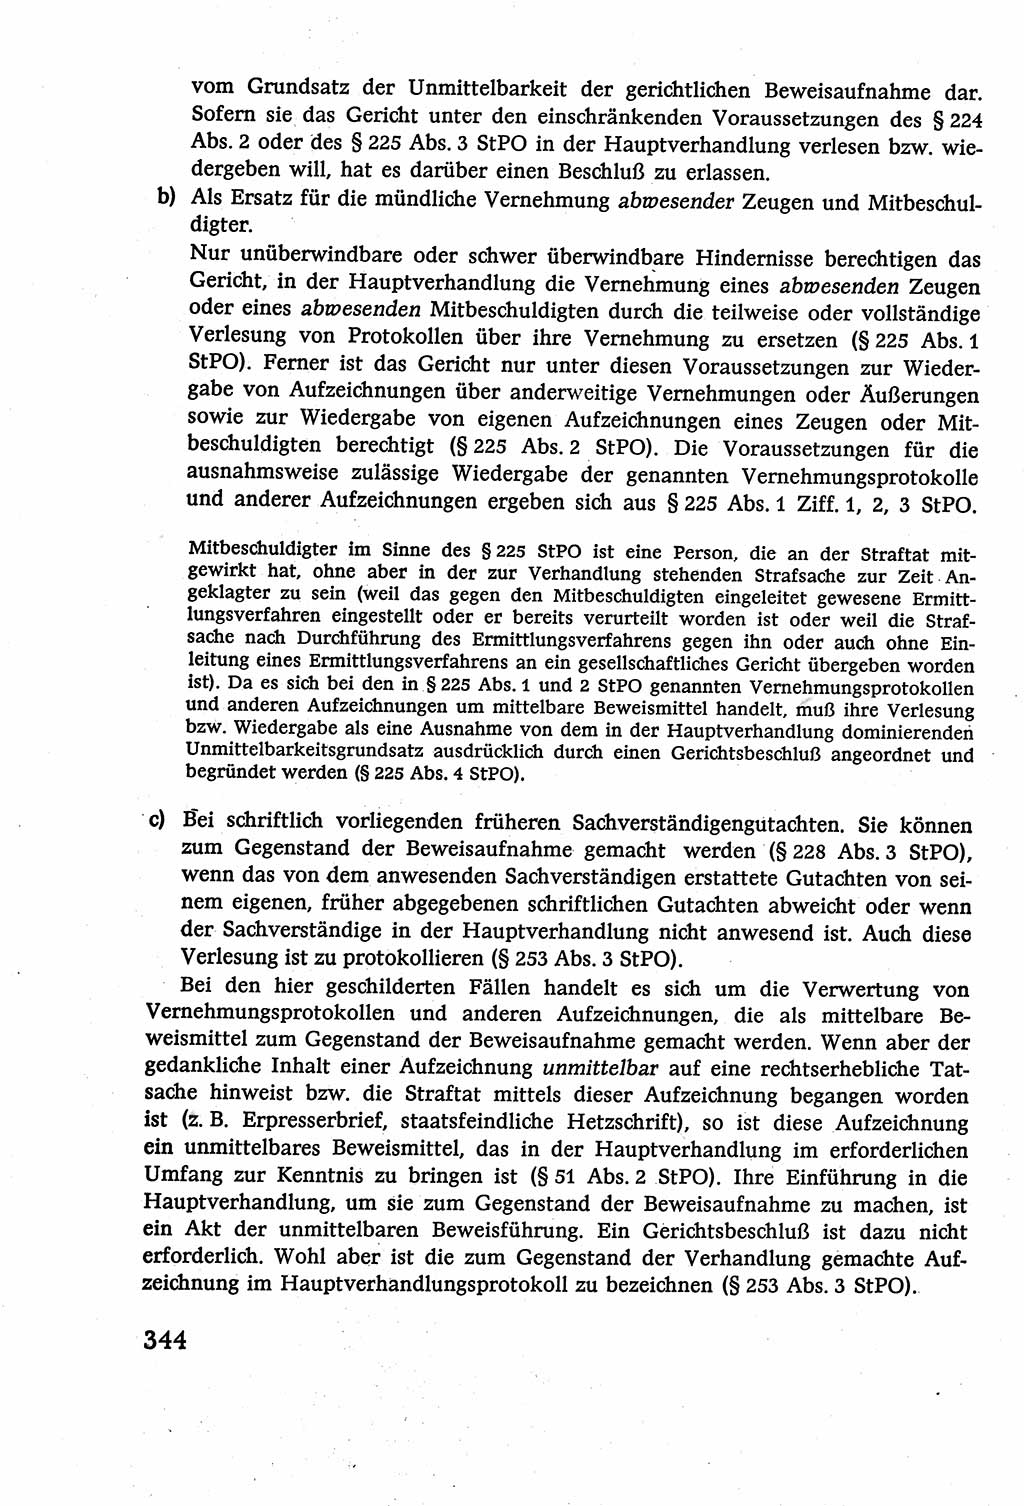 Strafverfahrensrecht [Deutsche Demokratische Republik (DDR)], Lehrbuch 1977, Seite 344 (Strafverf.-R. DDR Lb. 1977, S. 344)